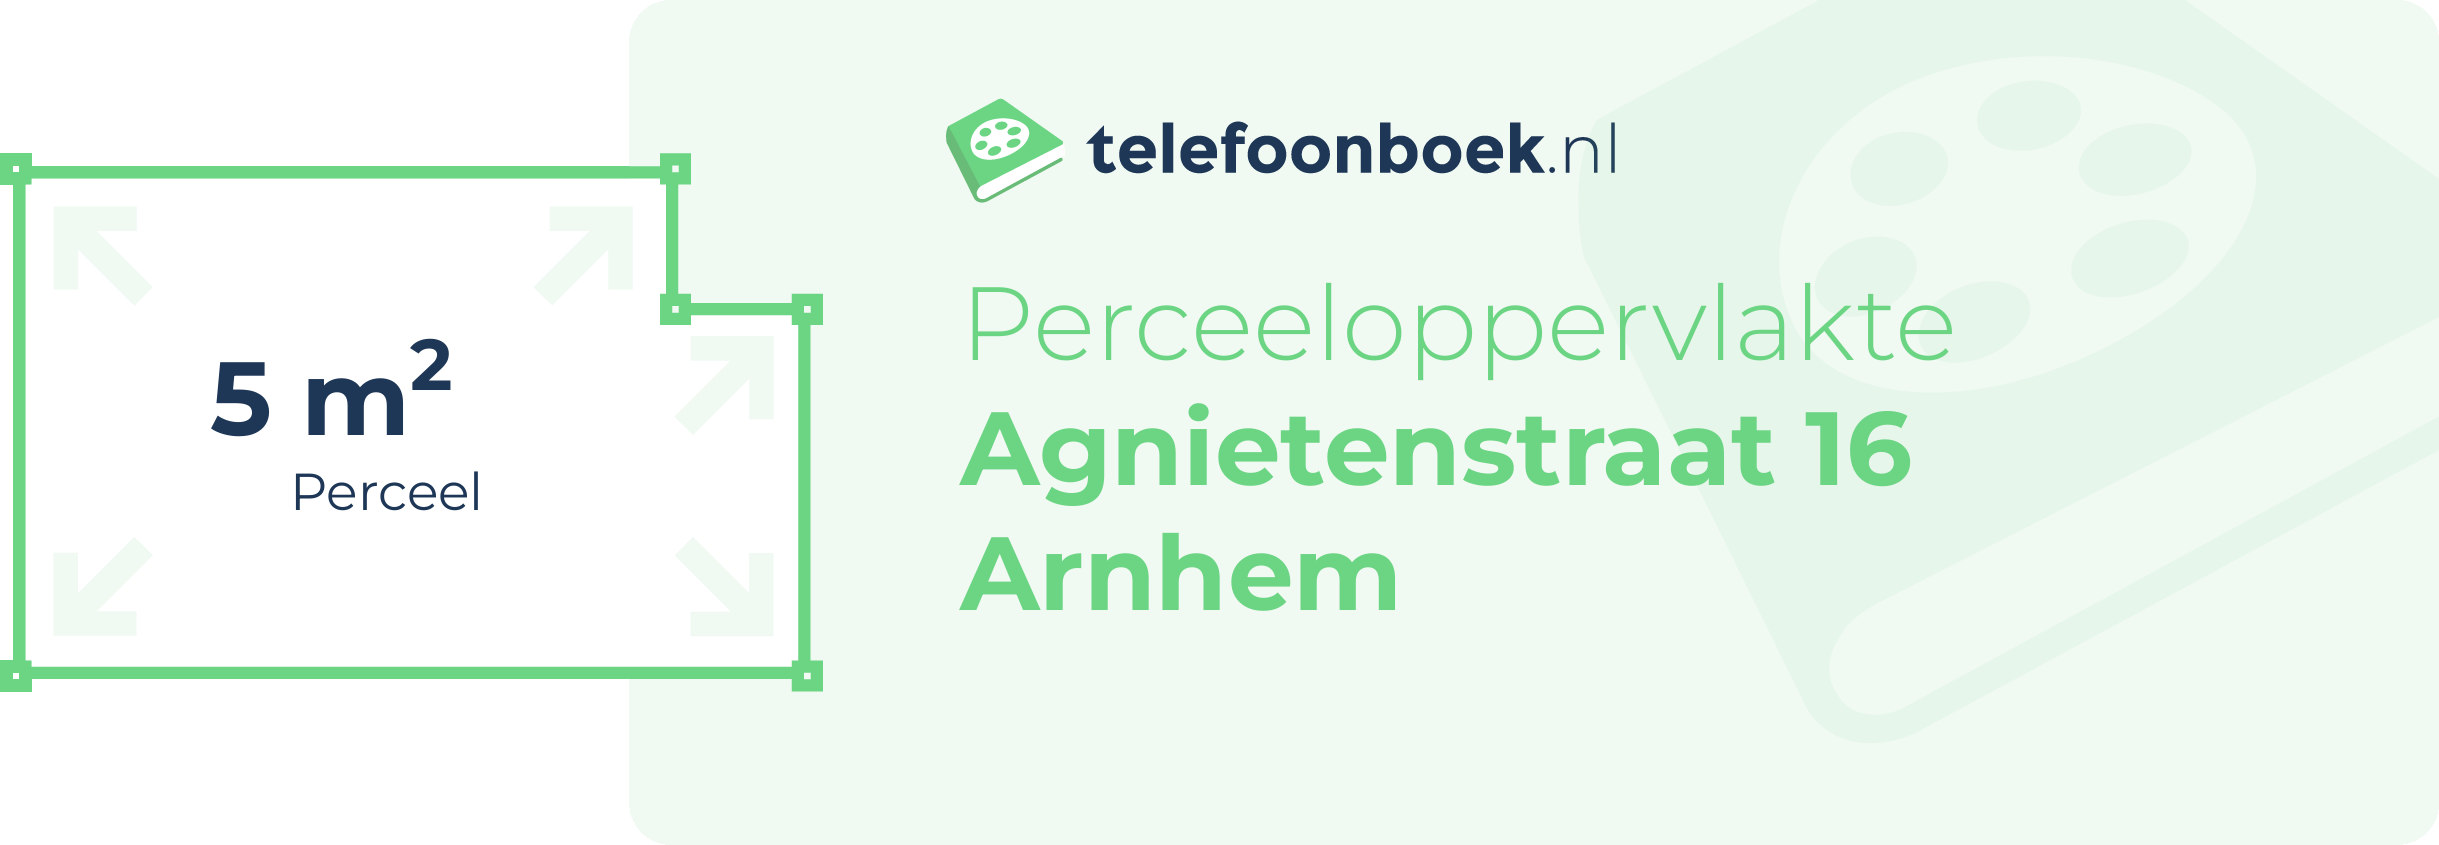 Perceeloppervlakte Agnietenstraat 16 Arnhem